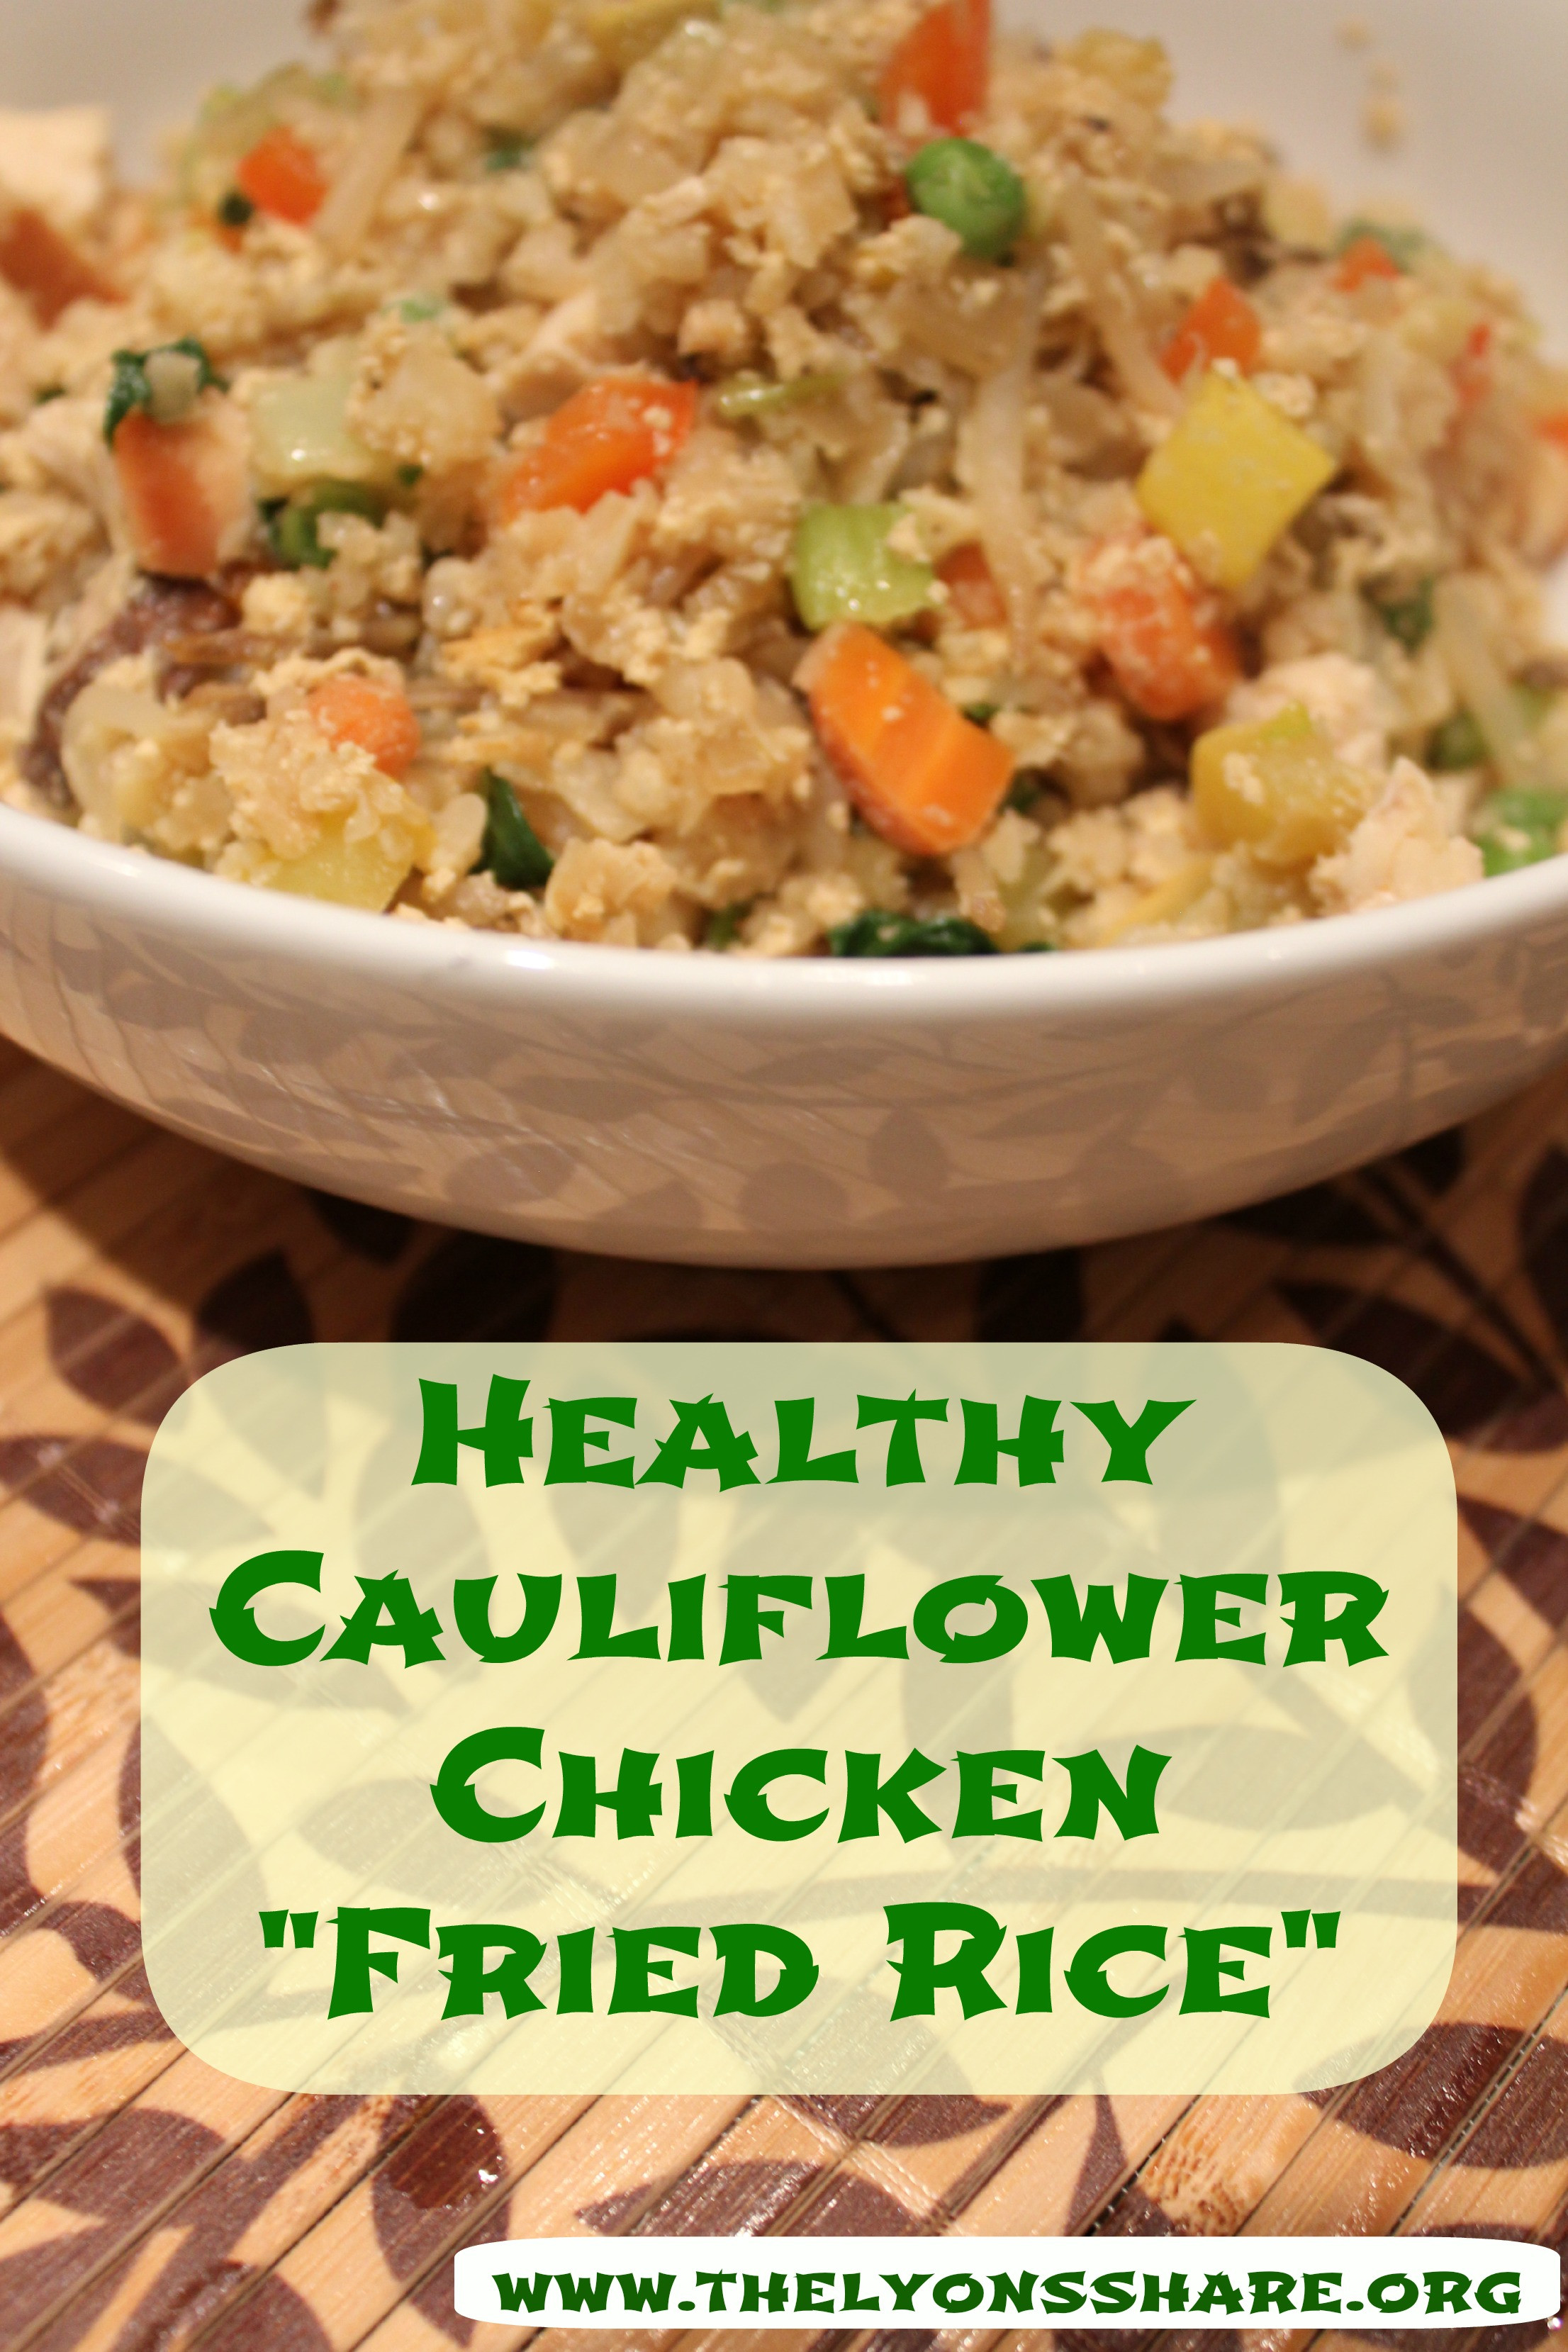 Healthy Cauliflower Recipes
 Healthy Cauliflower Chicken "Fried Rice"